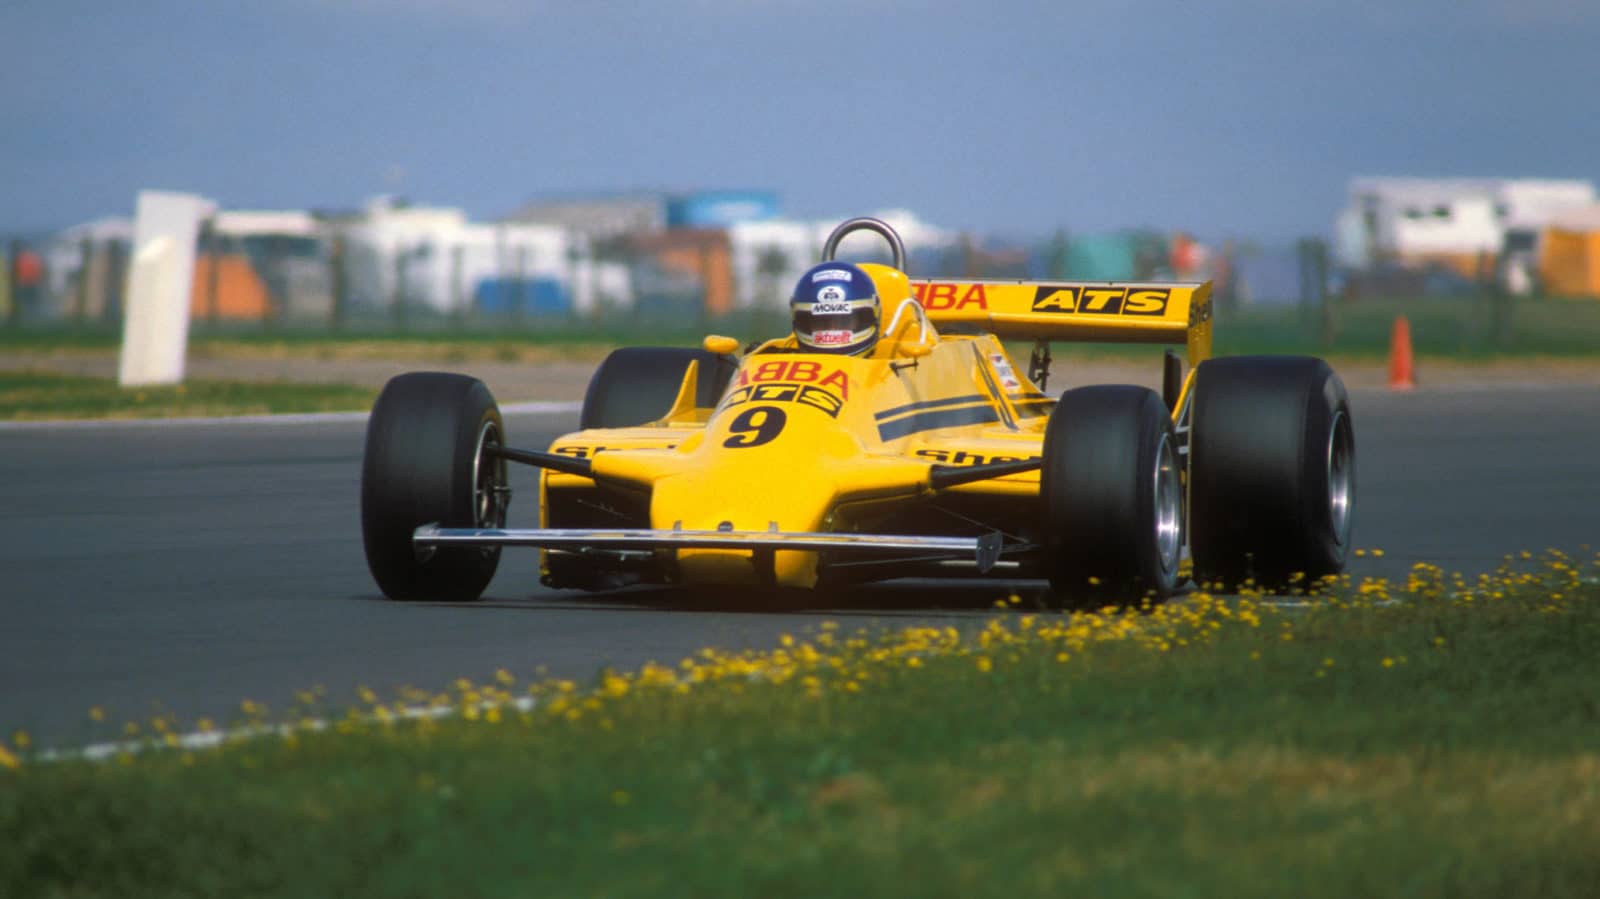 Slim-Borgudd-in-ATS-Ford-at-Silverstone-for-the-1981-British-Grand-Prix